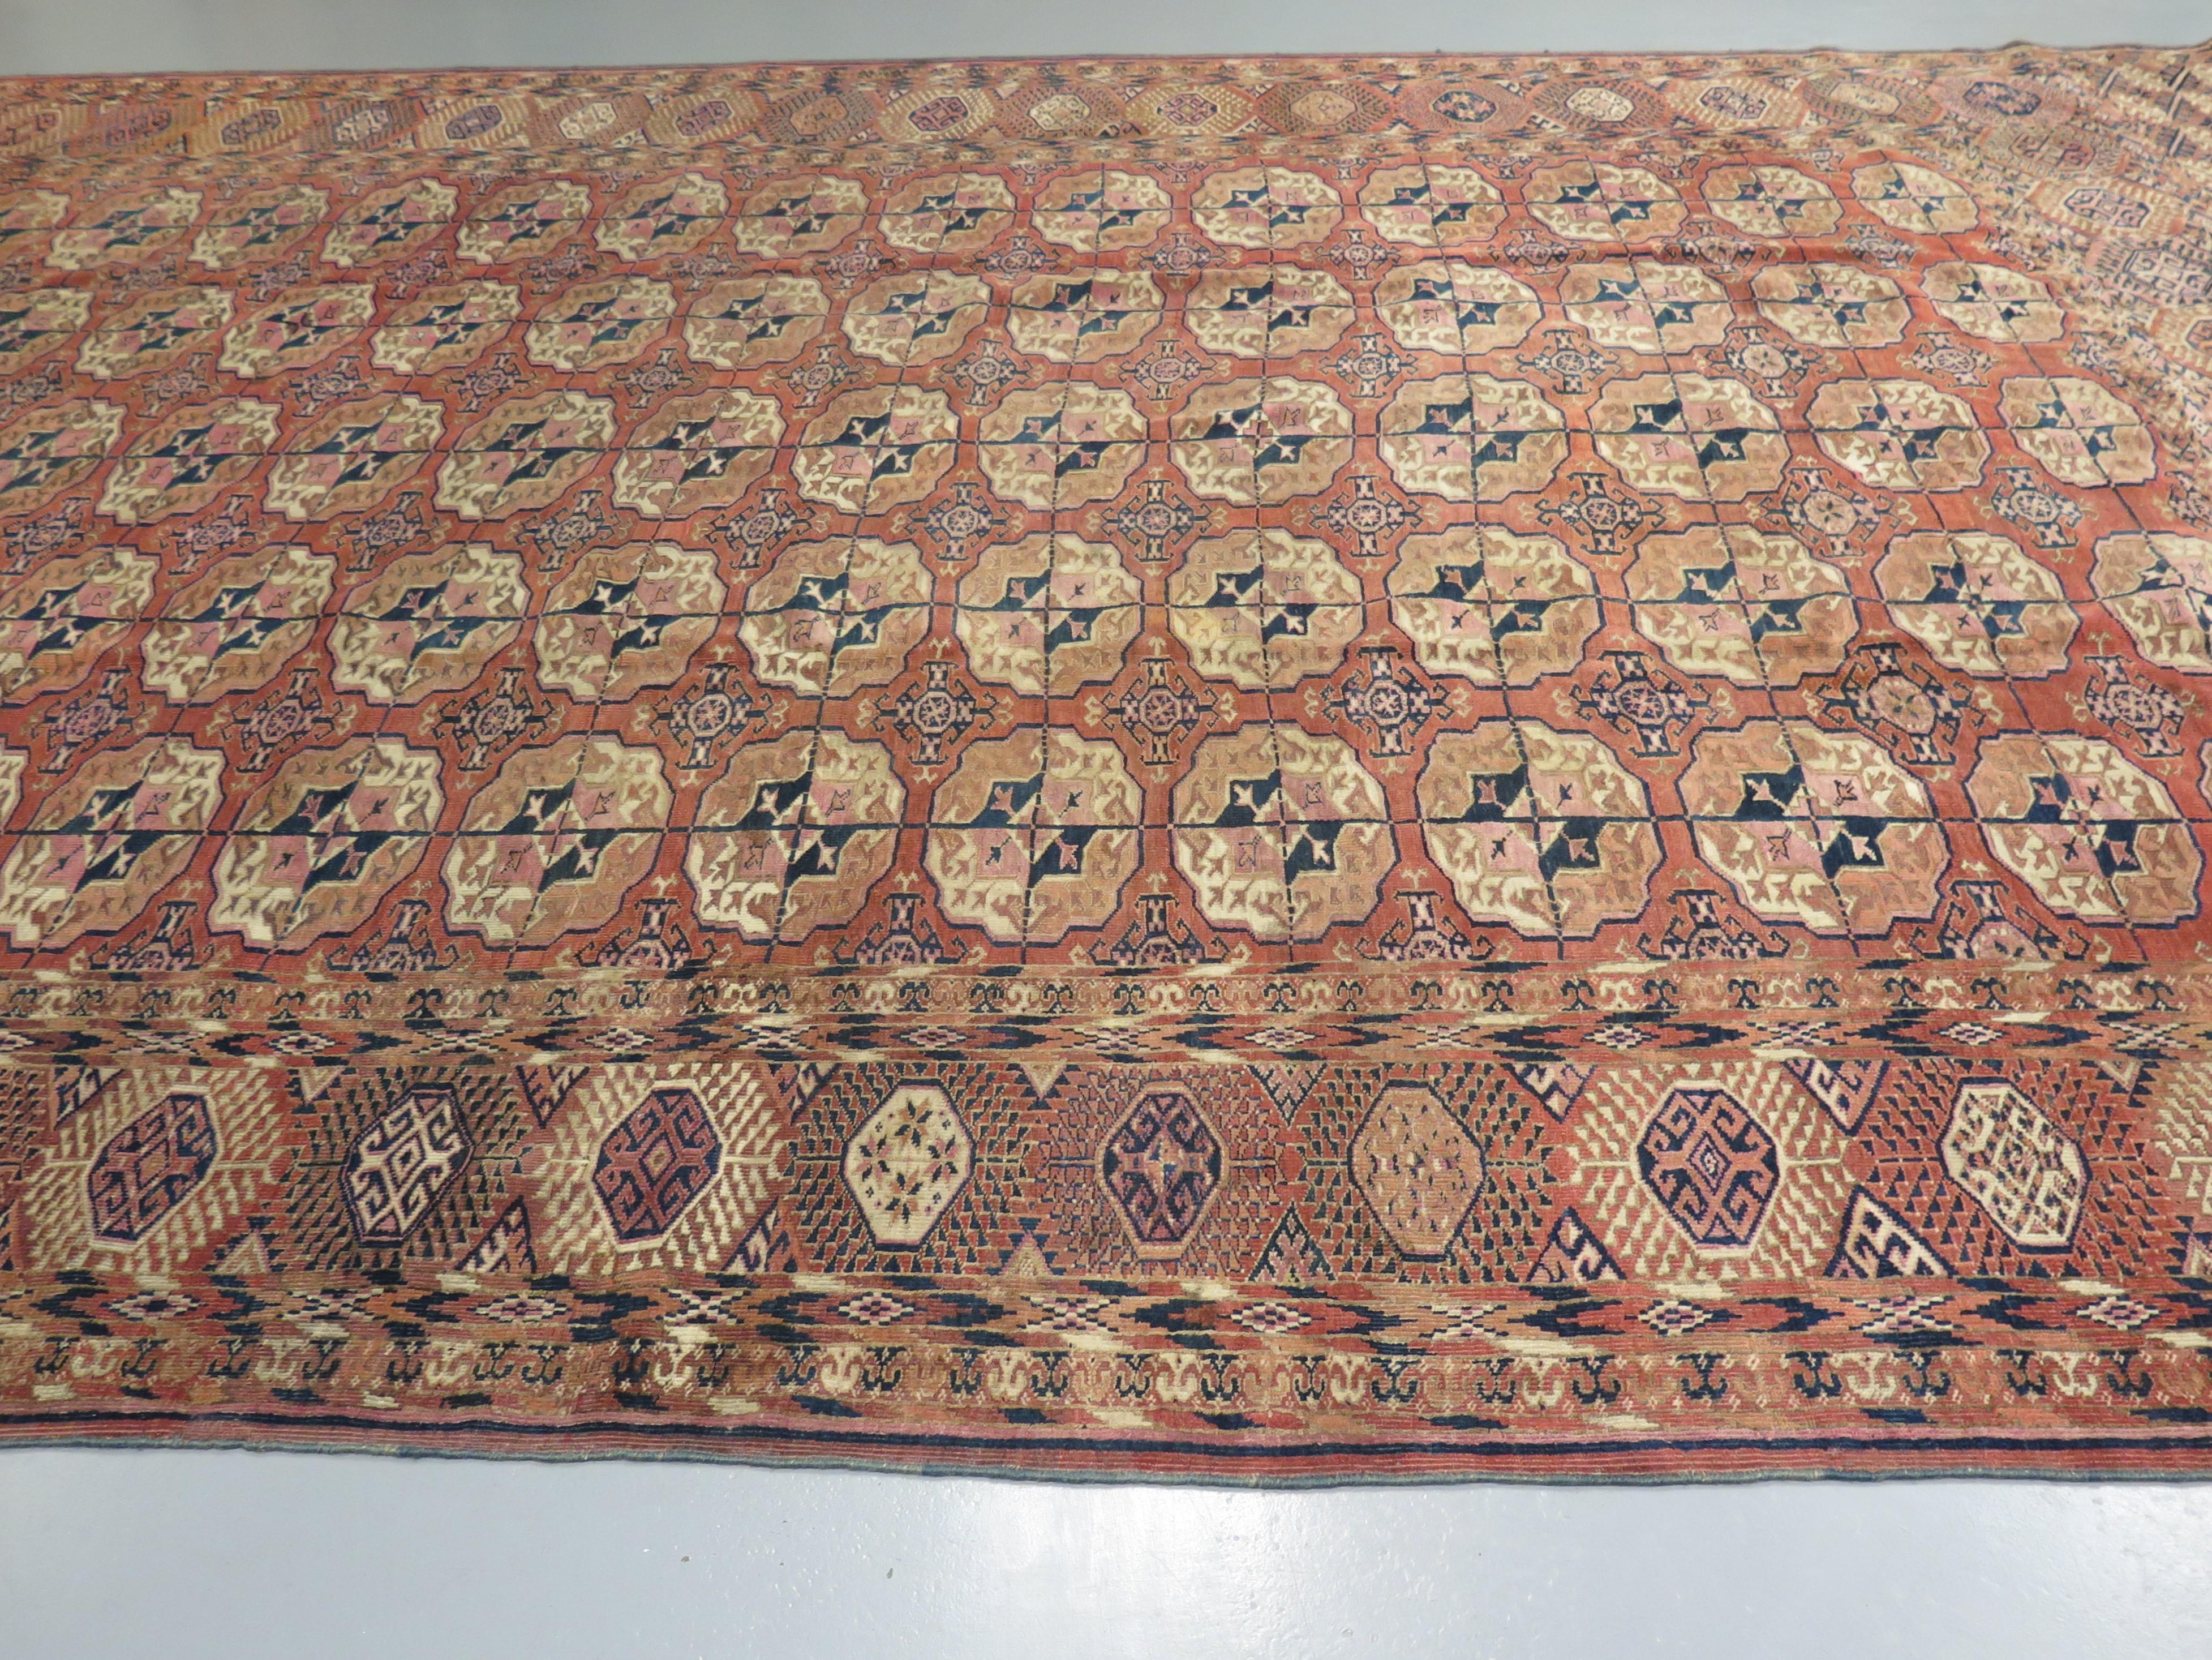 Tekke-Teppiche sind an ihren unverwechselbaren Elefantenfußmustern zu erkennen, vor allem die frühen Stücke, die für ihre kühnen, visuell ansprechenden Zeichnungen bekannt sind. Die von den Webern der Tekke-Stämme in Zentralasien hergestellten